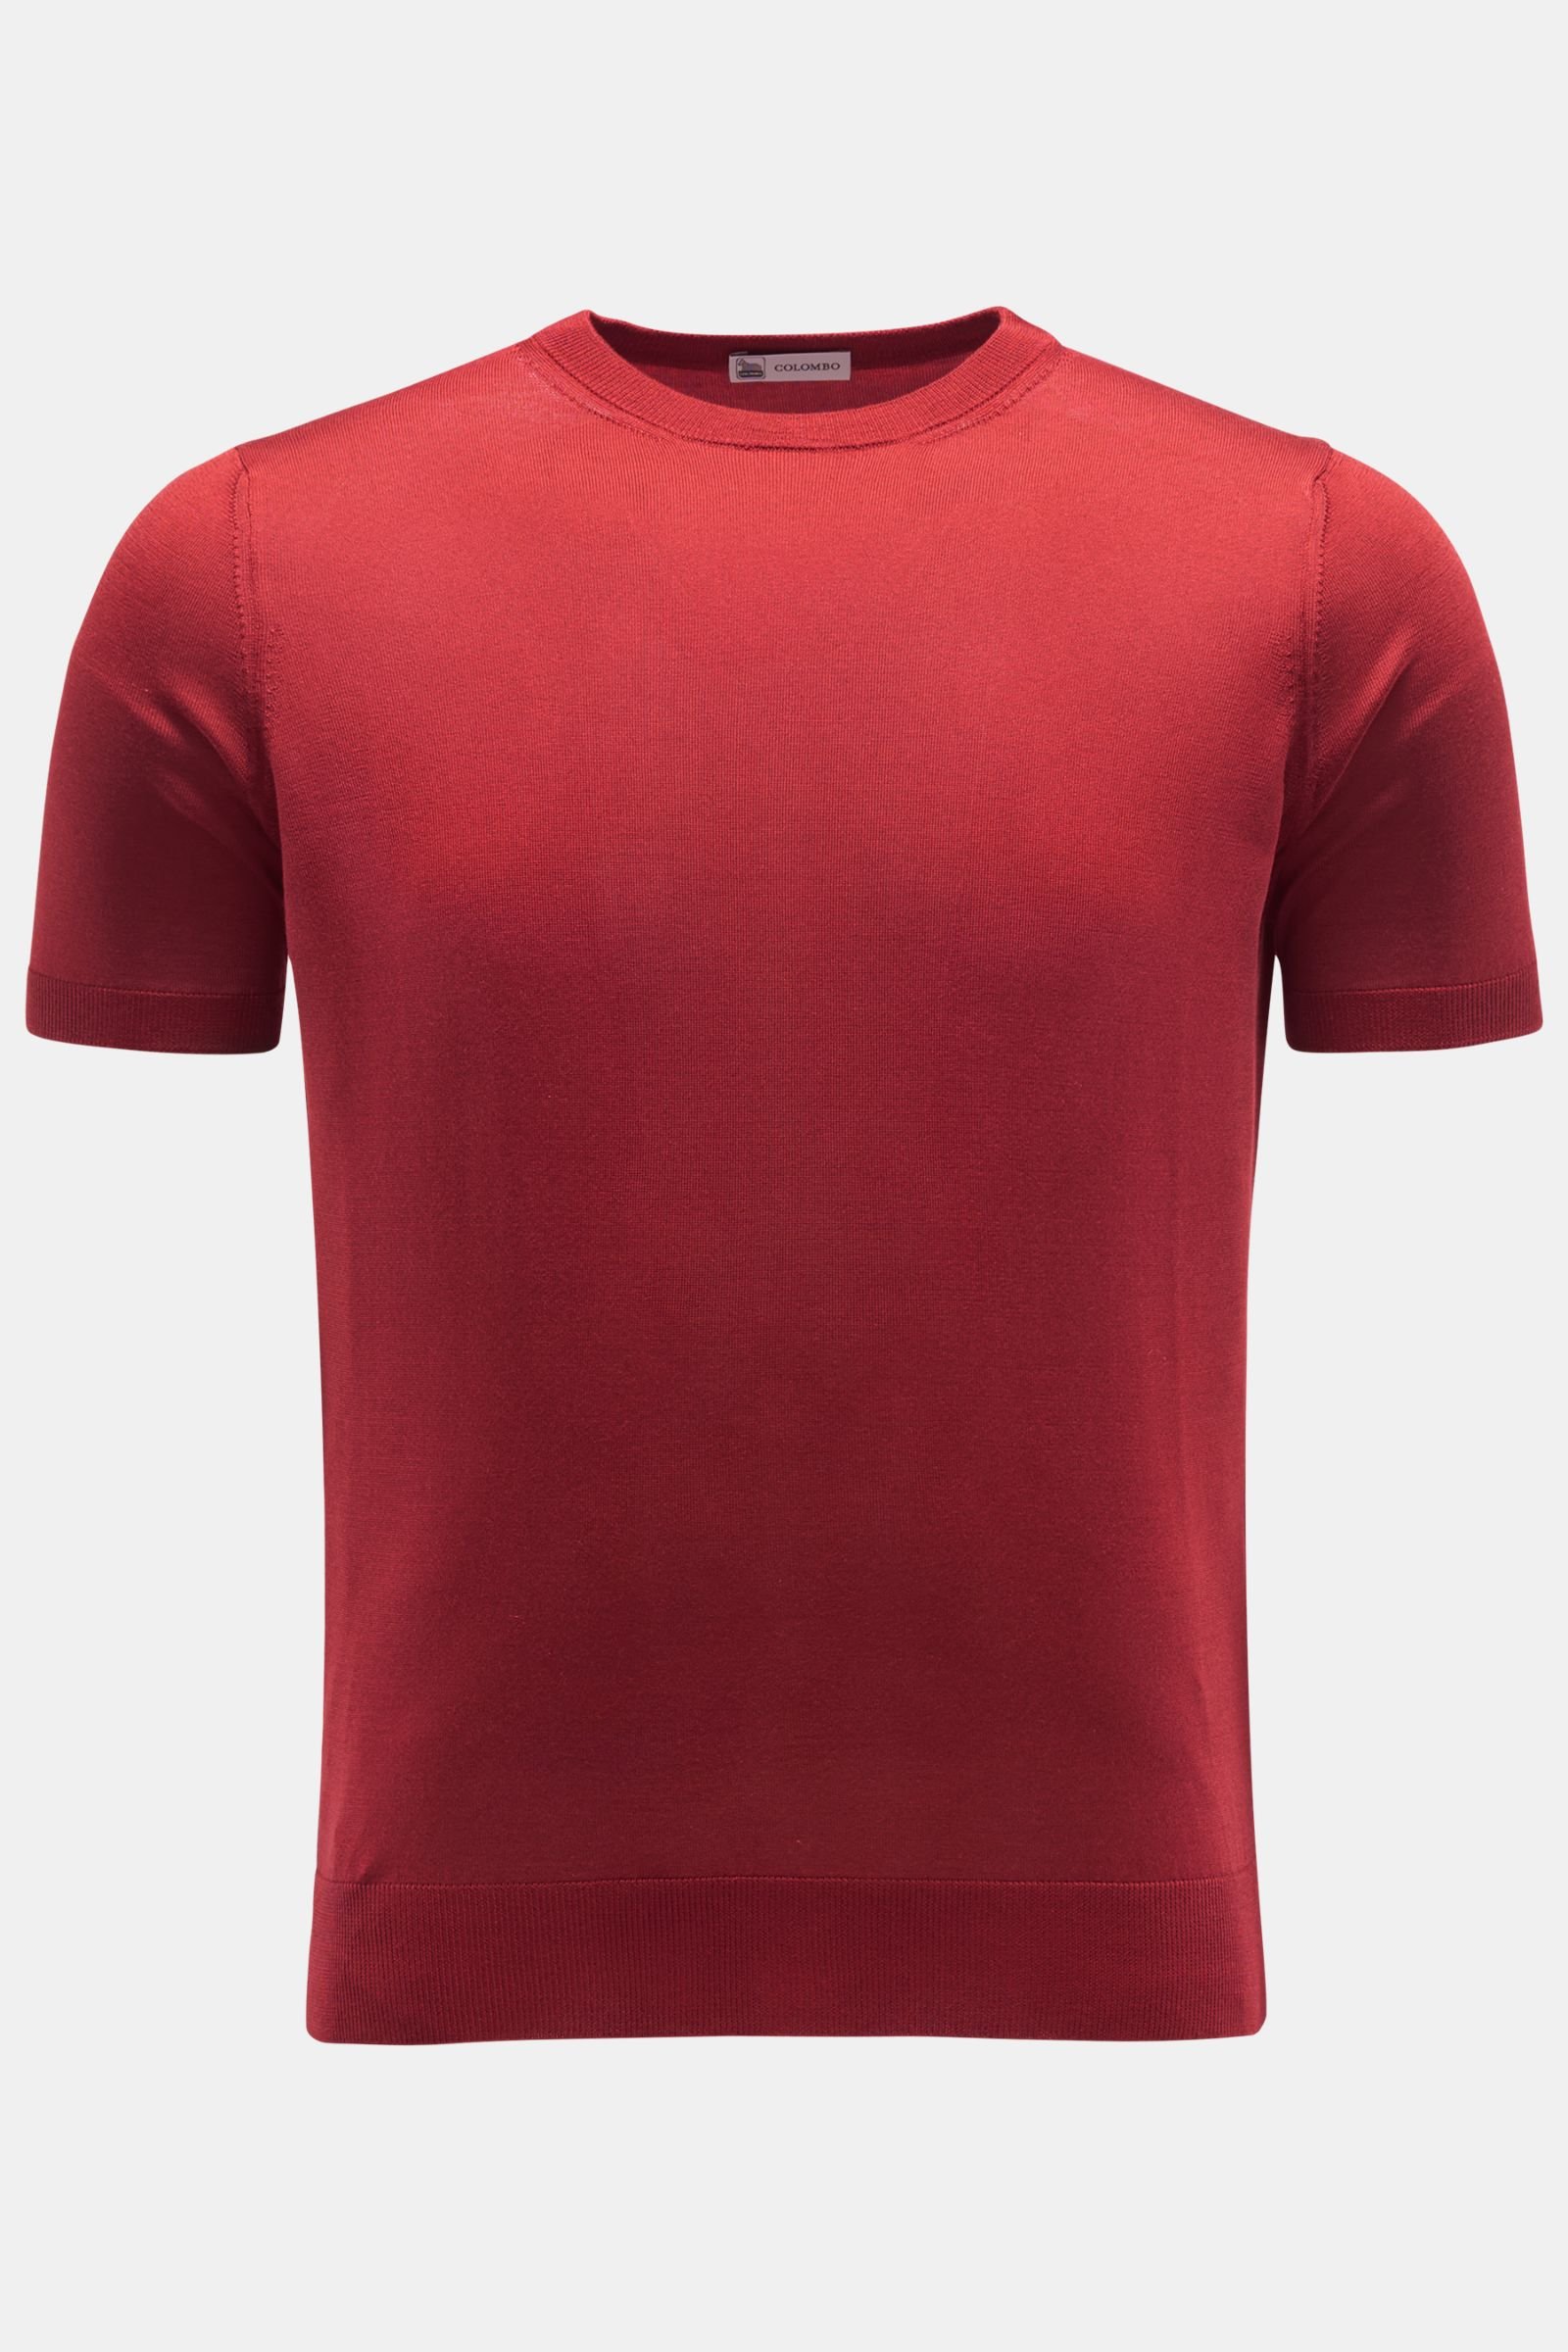 Silk short sleeve jumper red